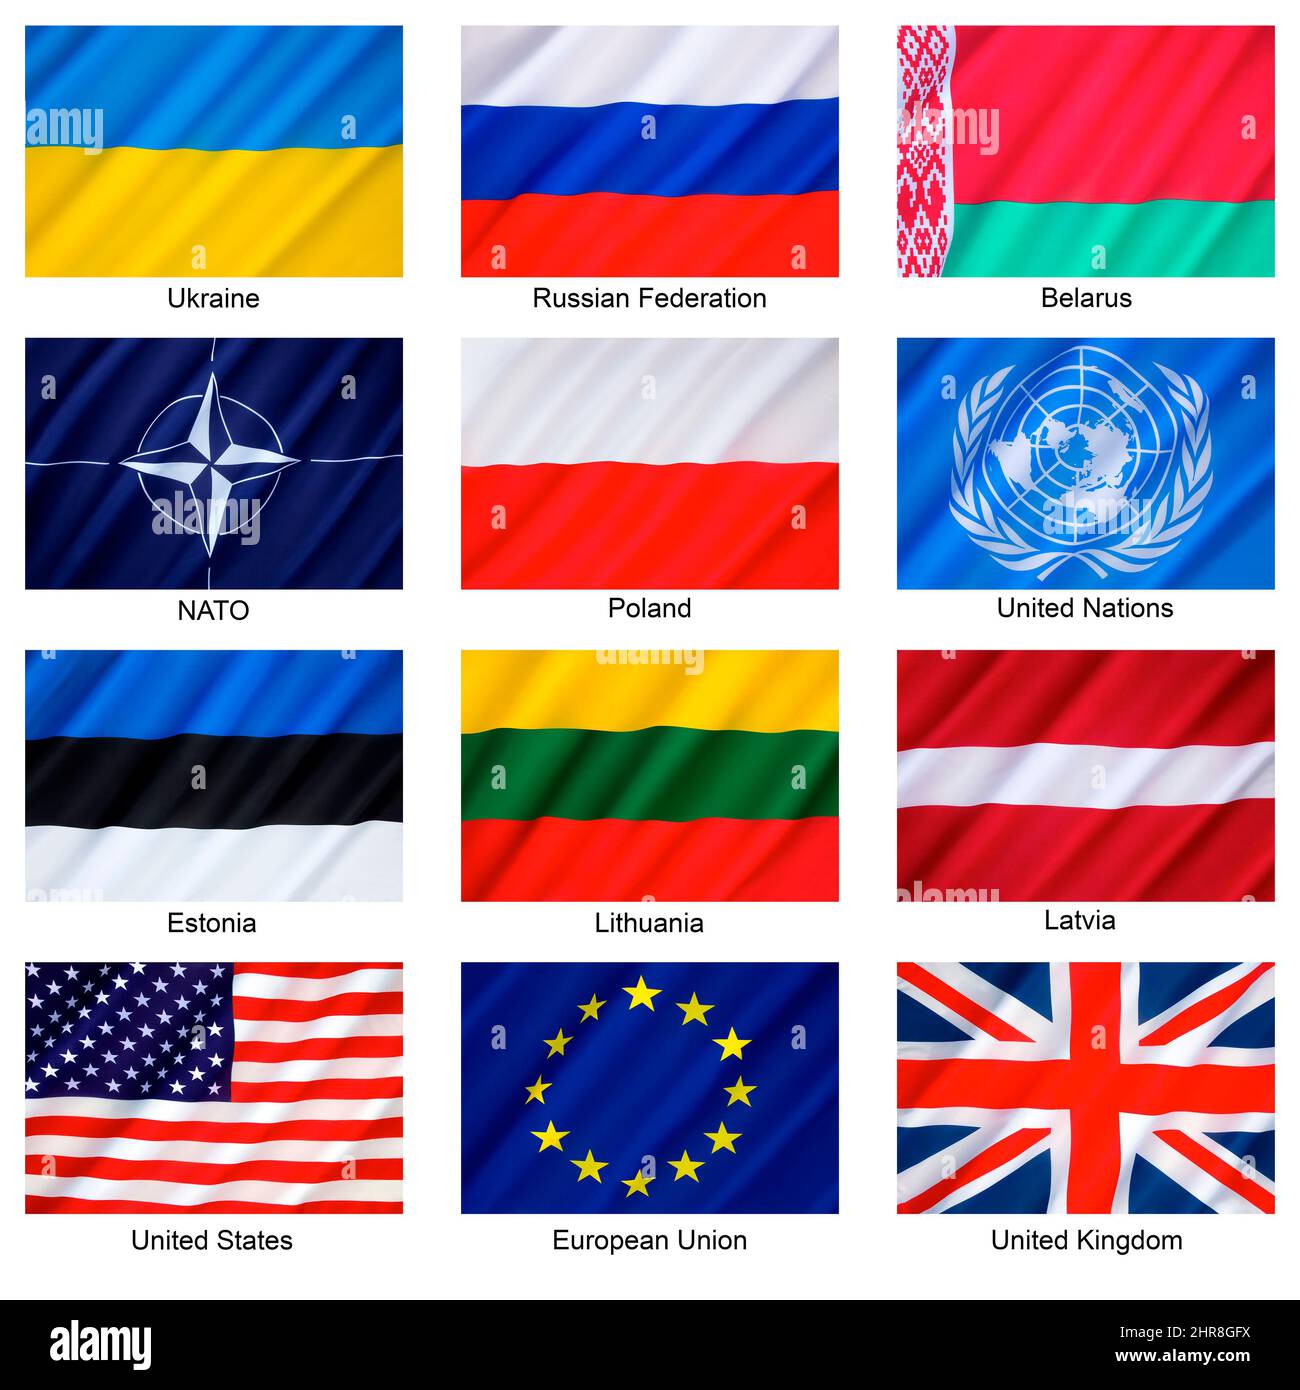 Russische Föderation - Ukraine-Konflikt - Flaggen der beteiligten Länder, der ehemaligen Sowjetstaaten, der UNO, der NATO und der wichtigsten westlichen Nationen - der CO Stockfoto